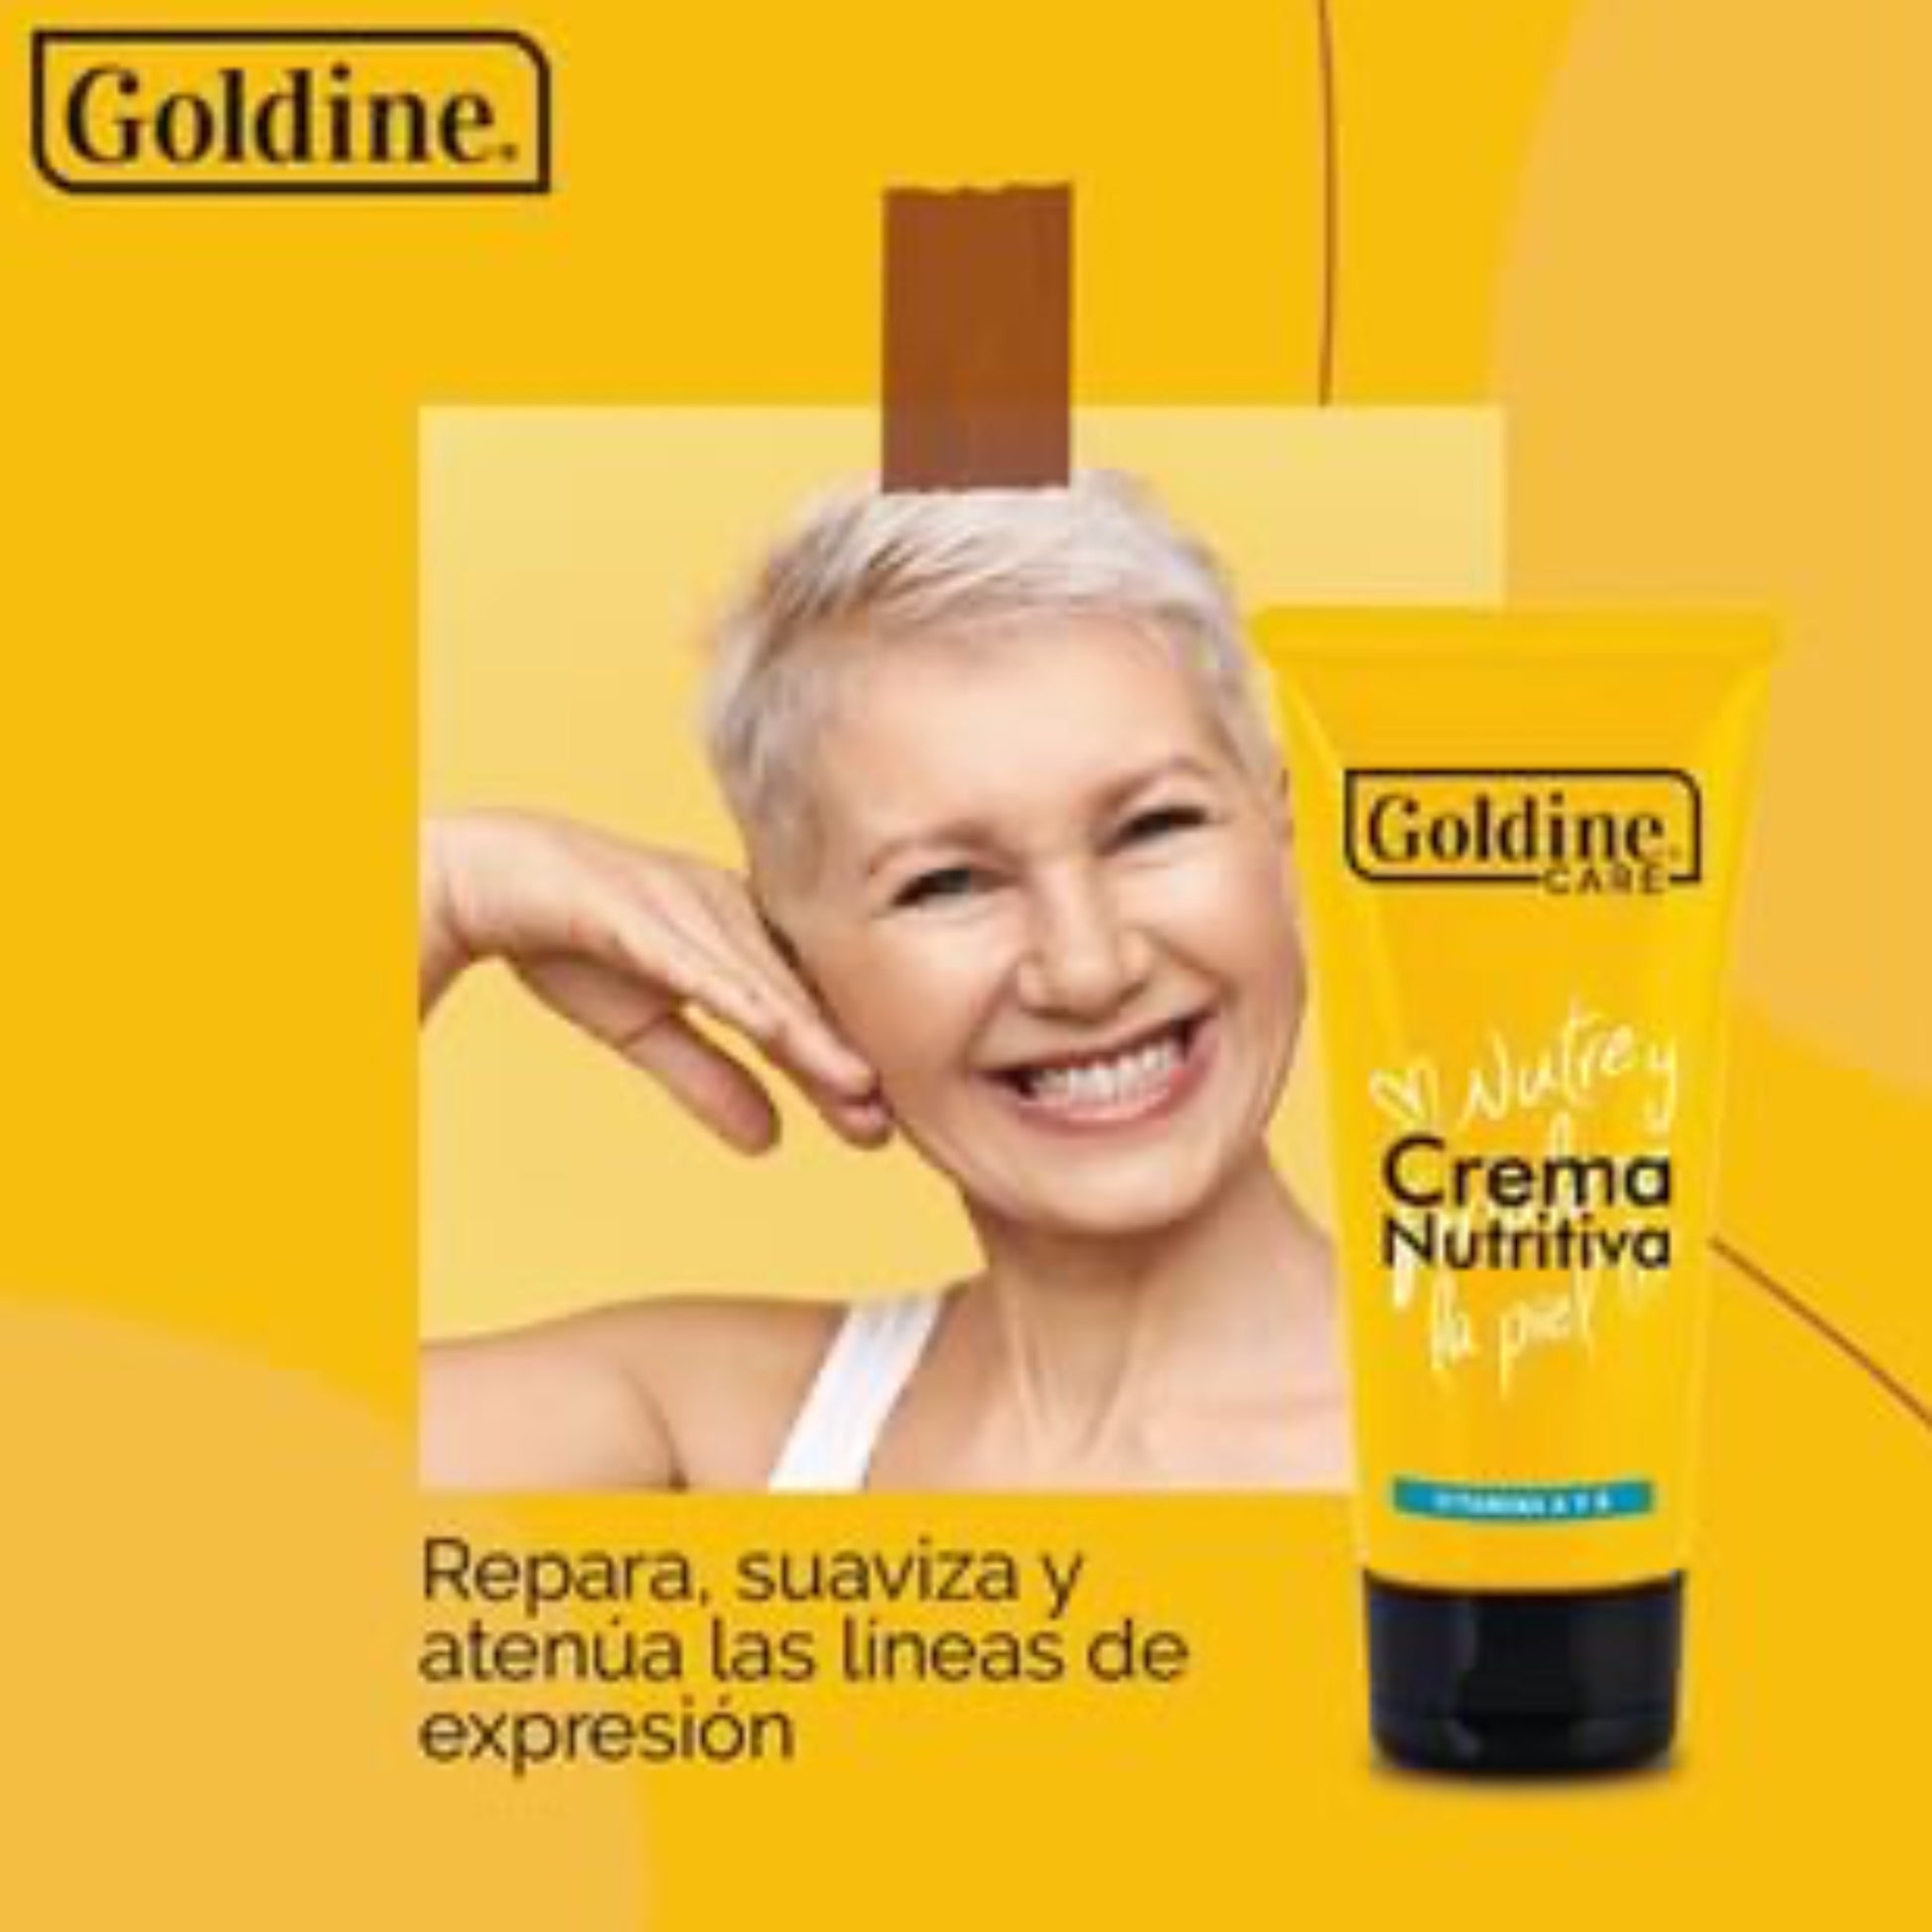 Crema nutritiva Goldine provee adecuada nutrición para la piel, previene envejecimiento prematuro, atenúa lineas de expresión.